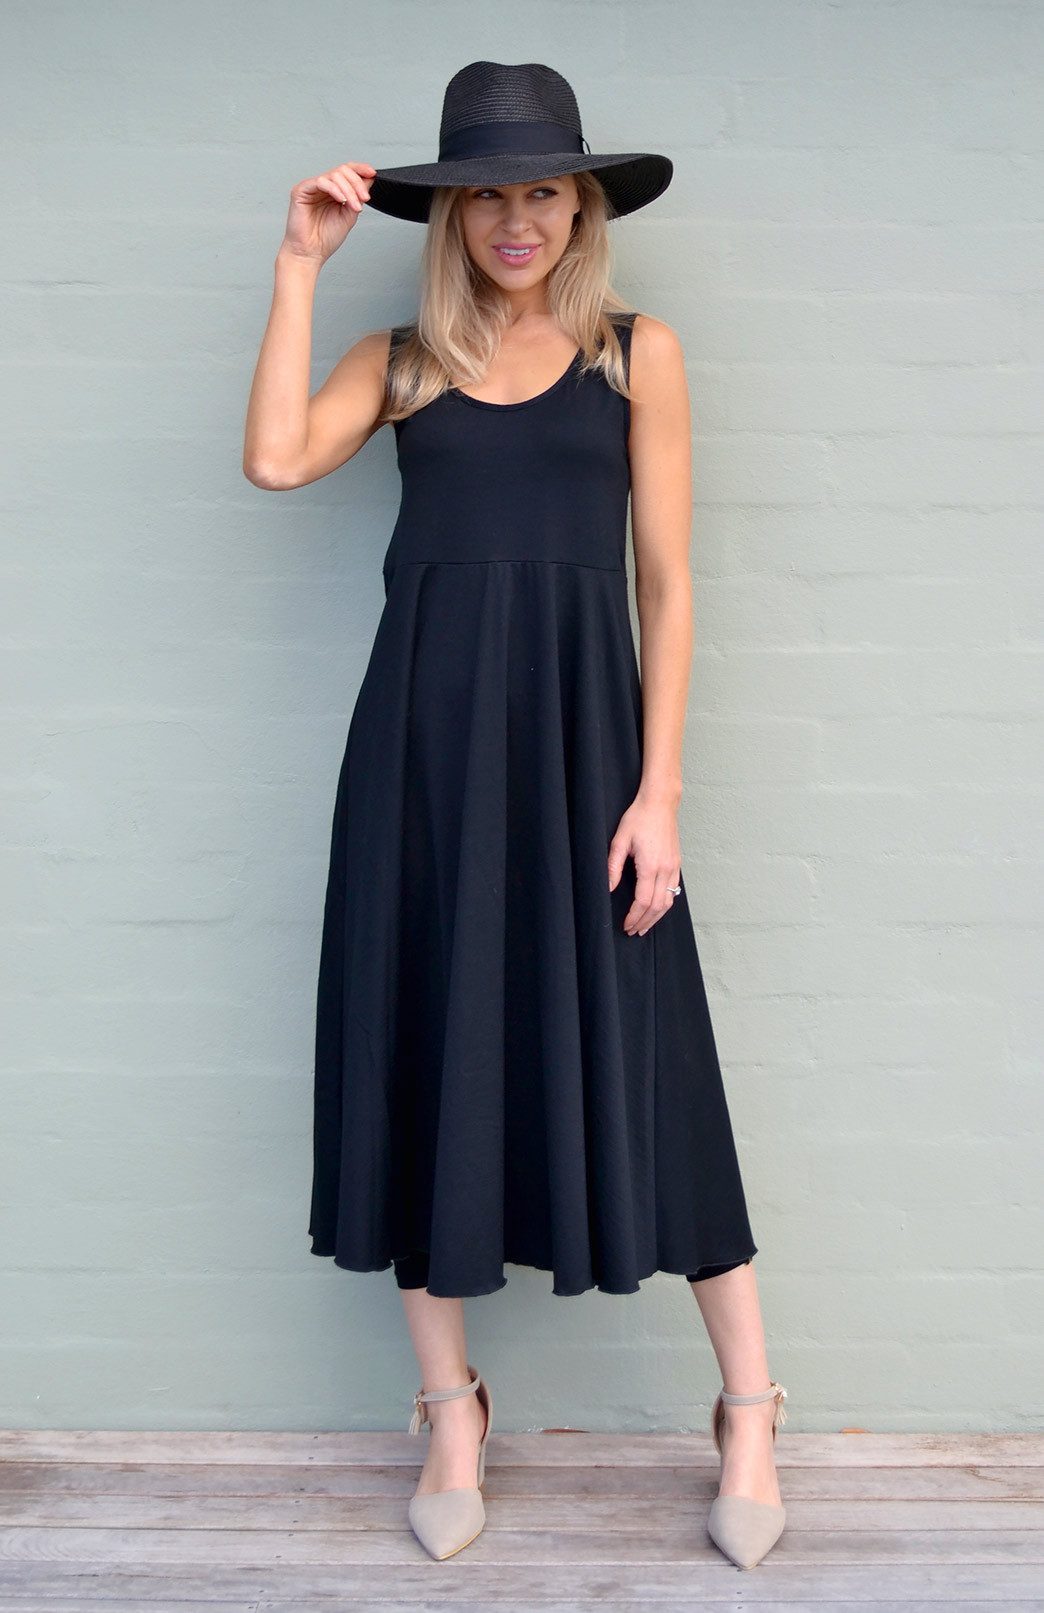 Fan Dress | Women’s Black Wool Sleeveless Spring Dress | Smitten Merino ...